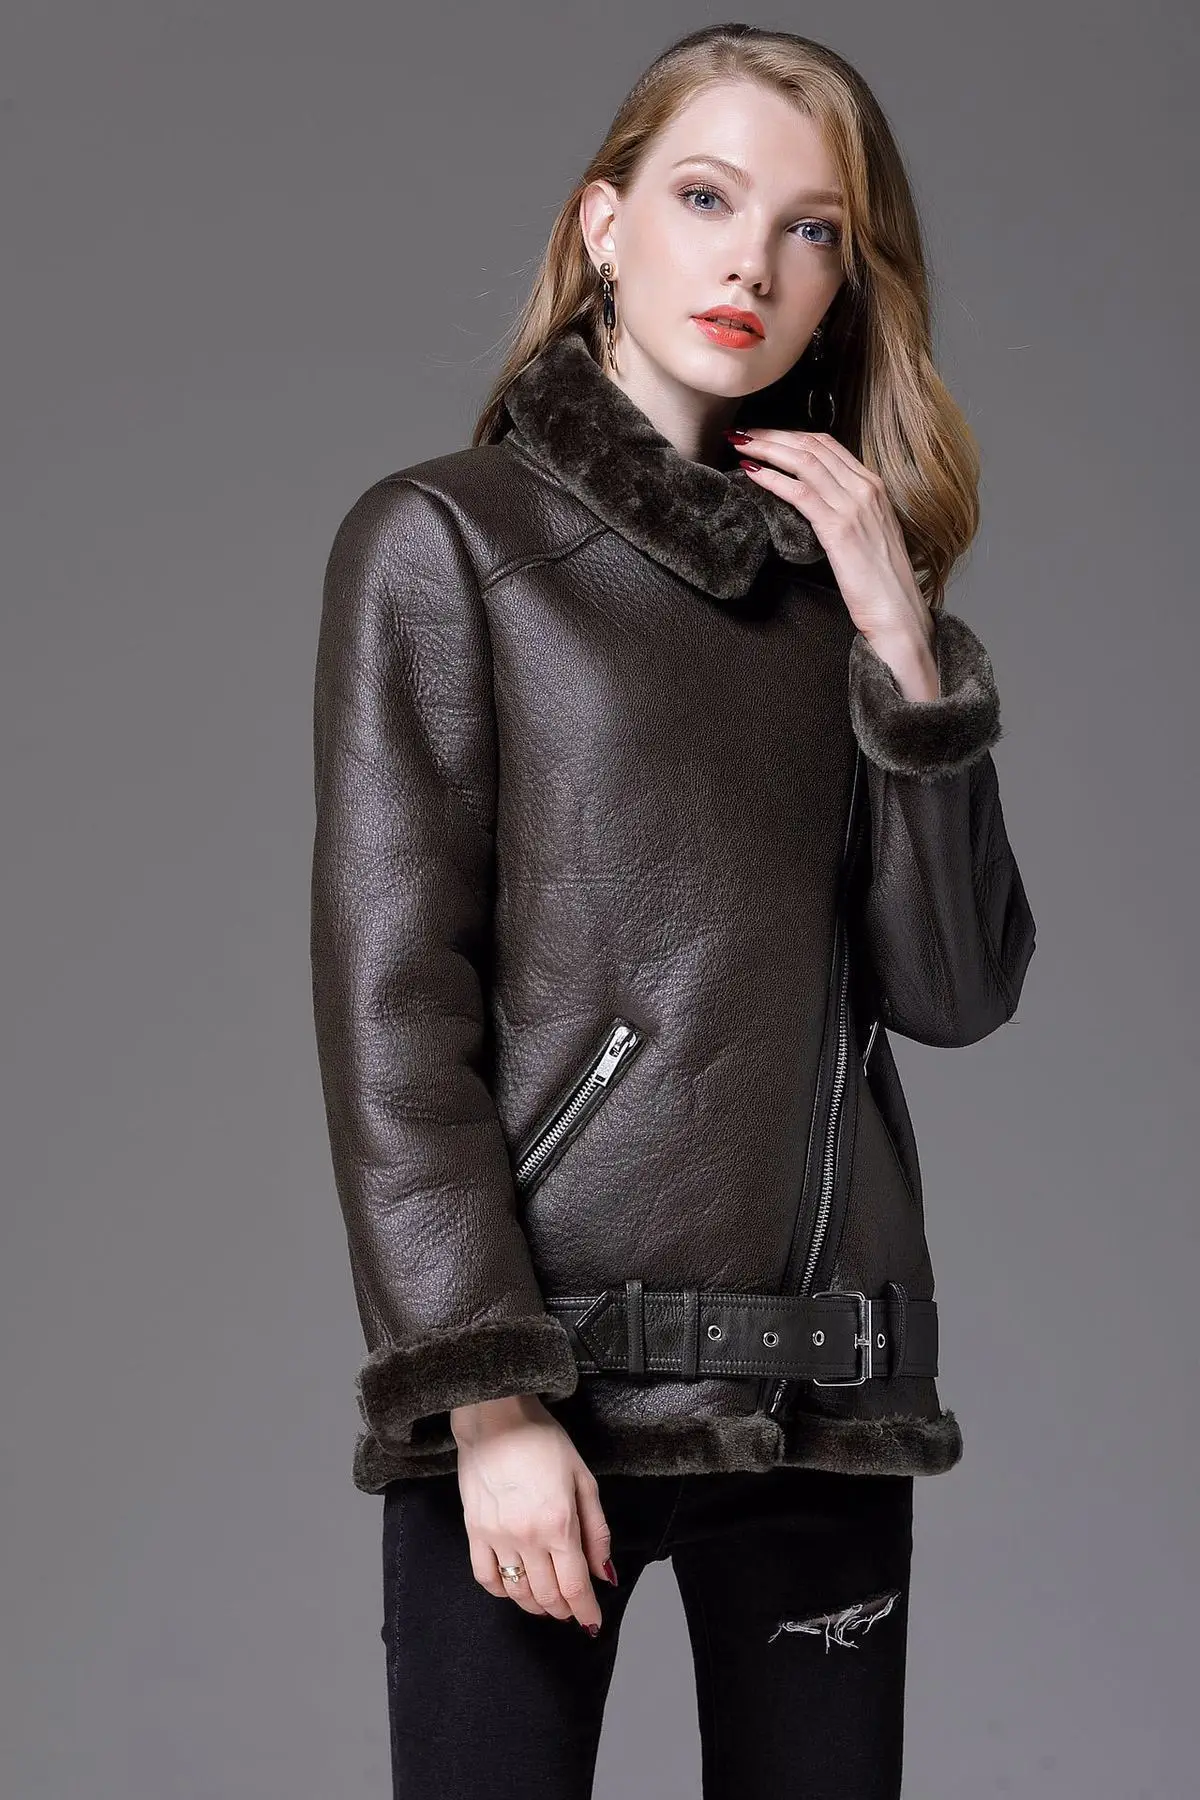 Женская куртка-бомбер ZA Женское пальто локомотив Базовая кожаная куртка женская Свободная Куртка Jaqueta Feminina верхняя одежда осень оверсайз теплая